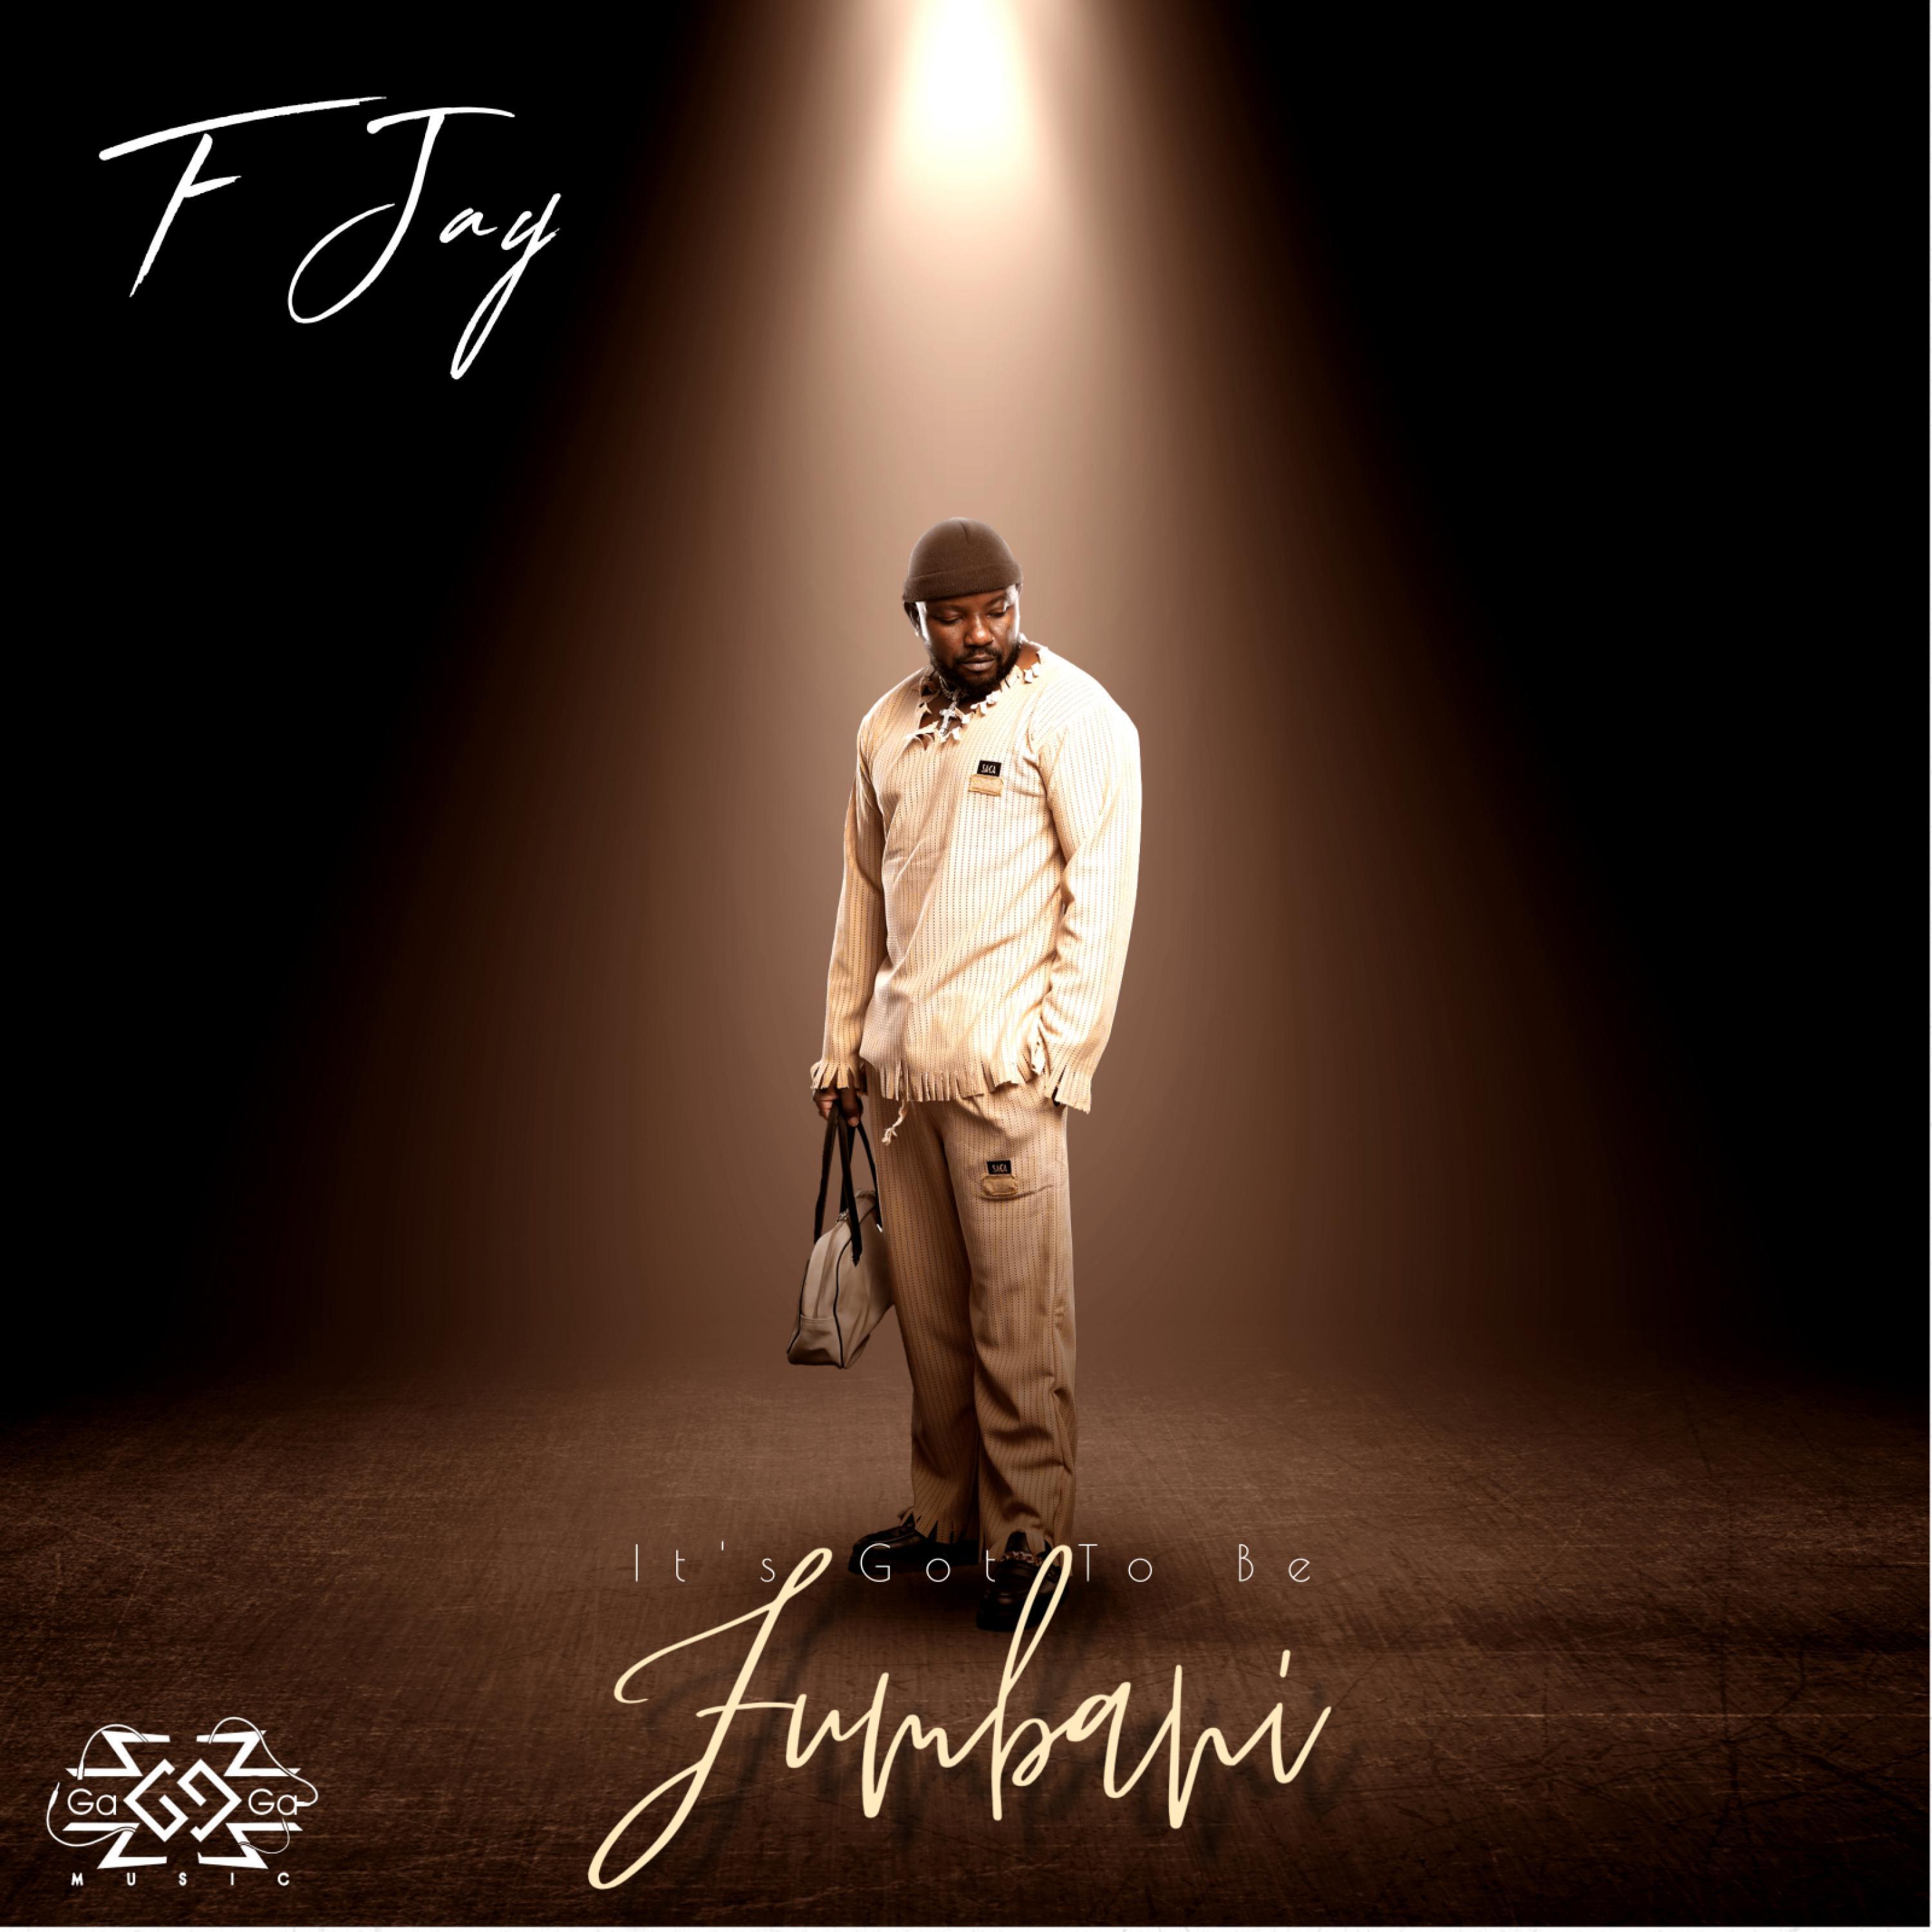 F Jay - Ma Feelings (feat. Driemo Mw, Killa & Freeman HKD) (Remix)